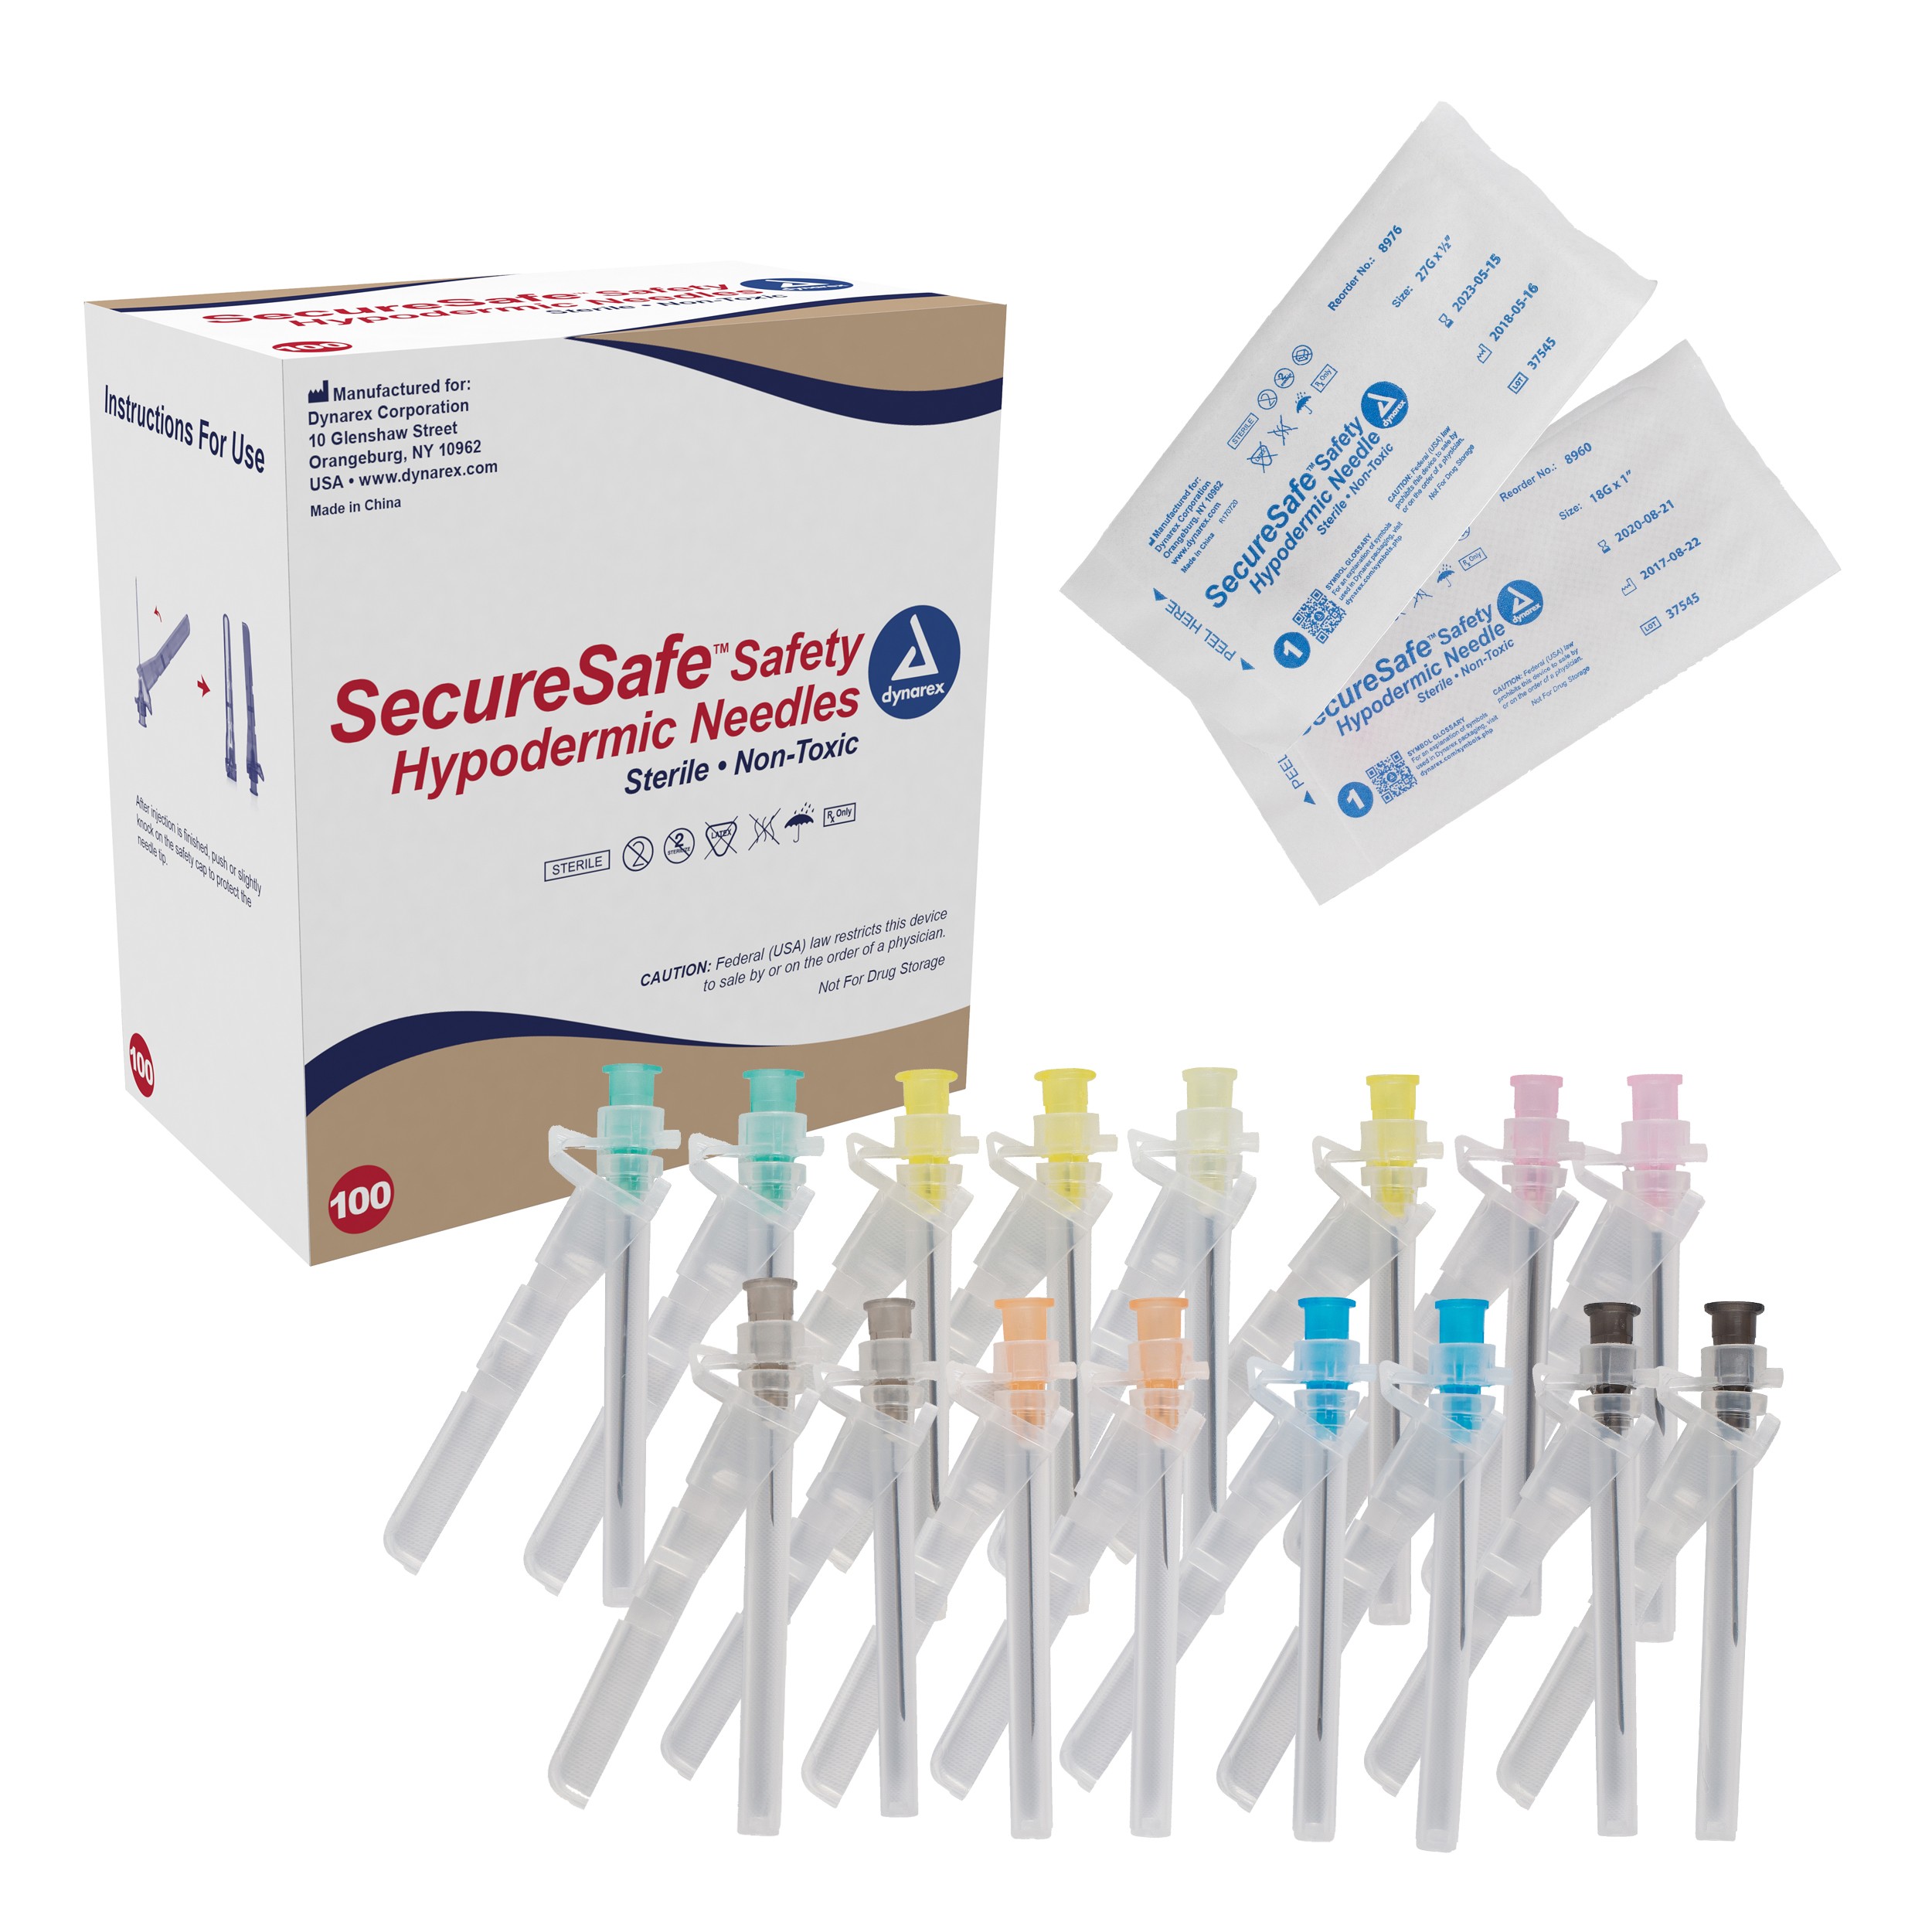 SecureSafe Safety Hypodermic Needle 25G, 5/8" needle